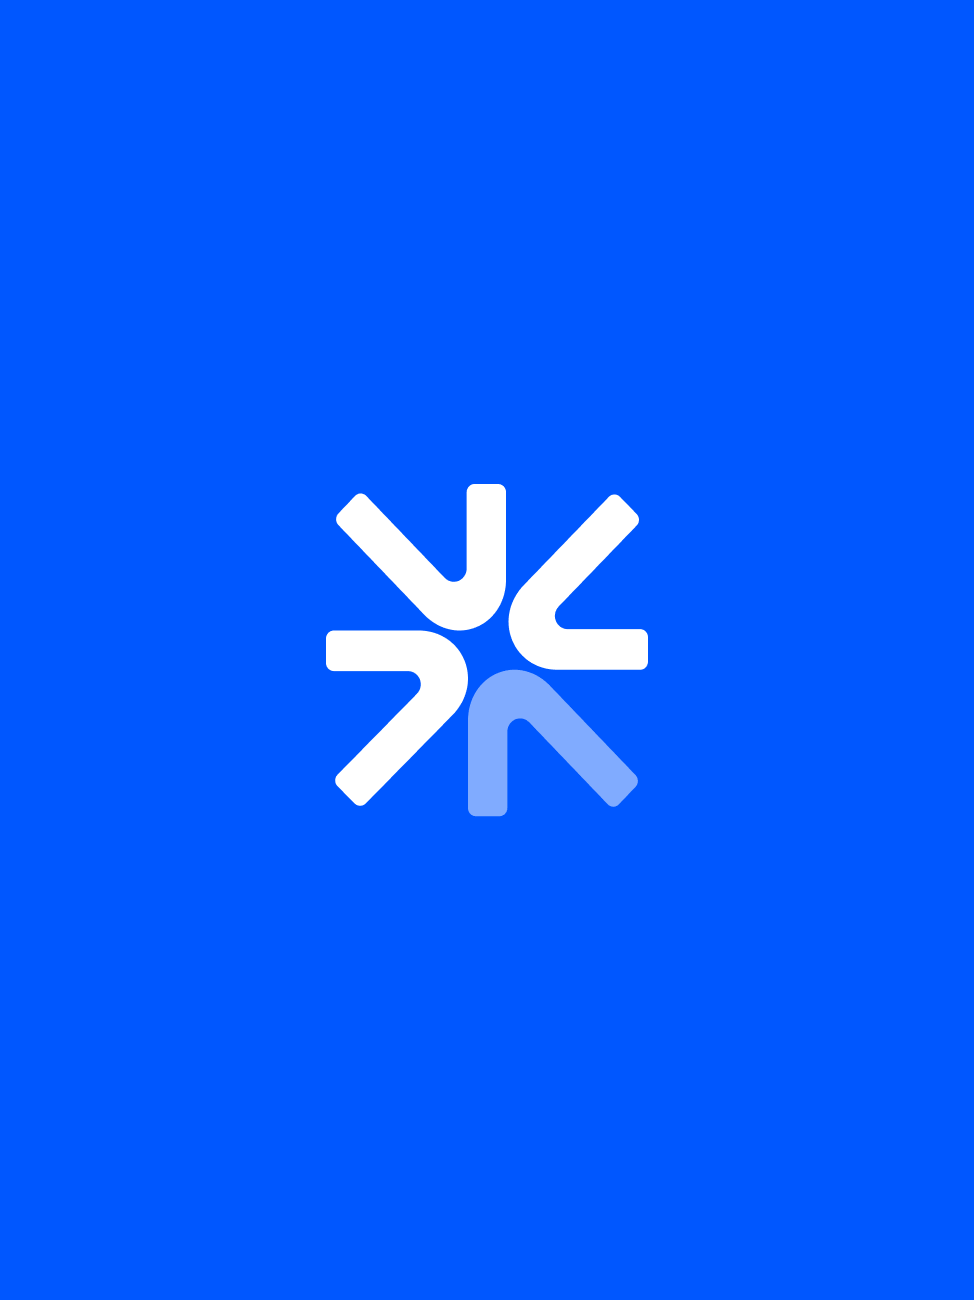 Les Stations - Monogramme du logo sur fond bleu